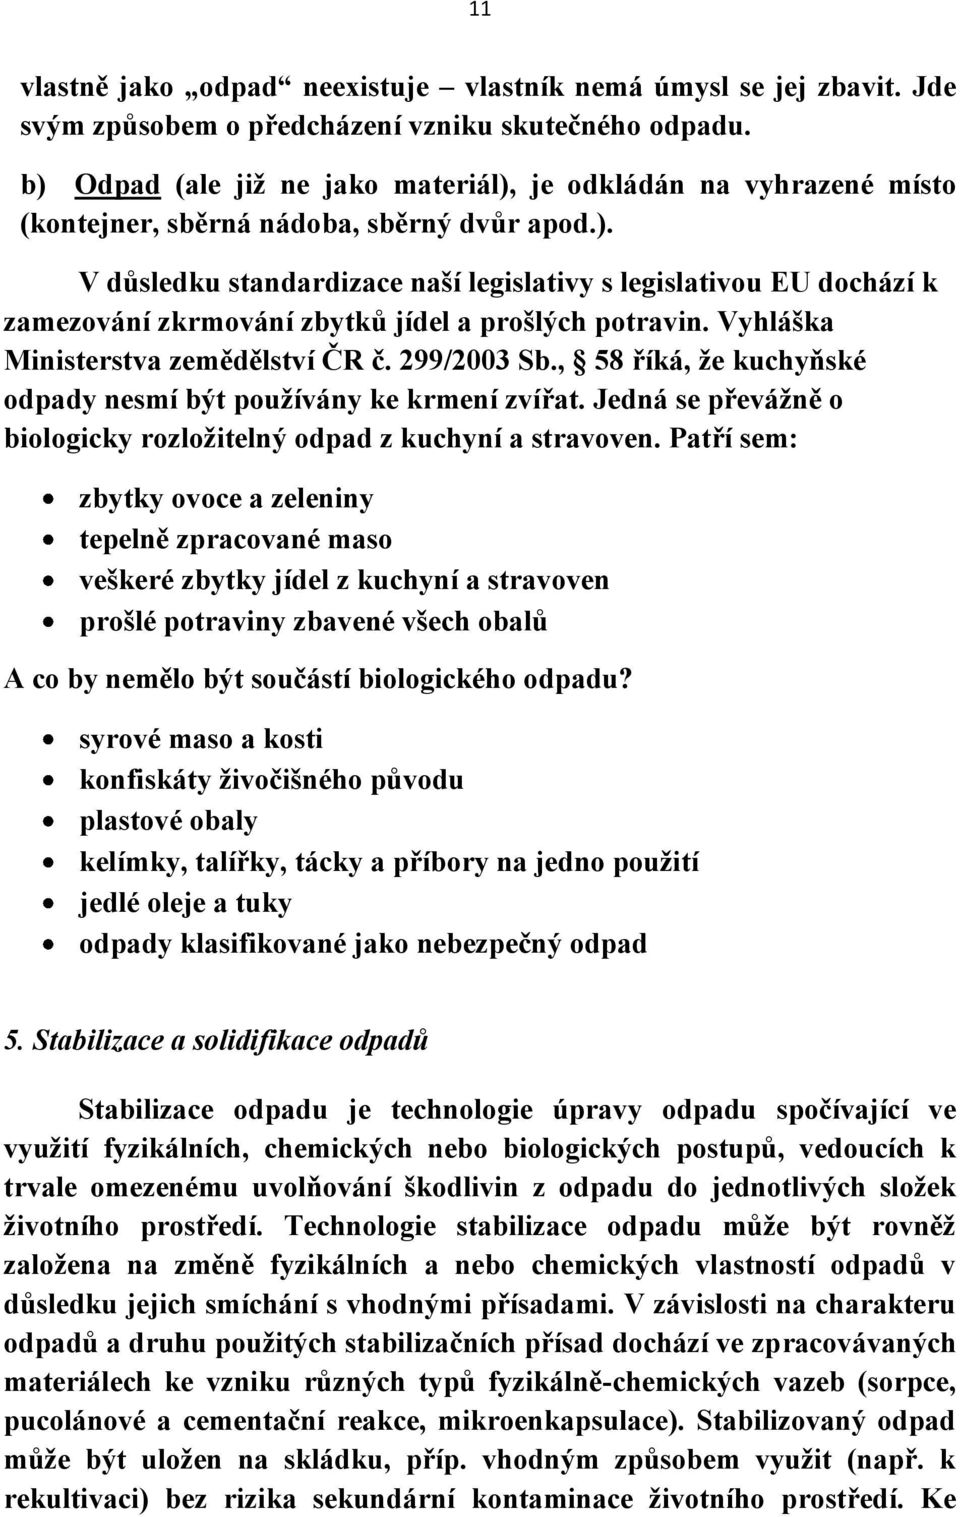 Vyhláška Ministerstva zemědělství ČR č. 299/2003 Sb., 58 říká, že kuchyňské odpady nesmí být používány ke krmení zvířat. Jedná se převážně o biologicky rozložitelný odpad z kuchyní a stravoven.